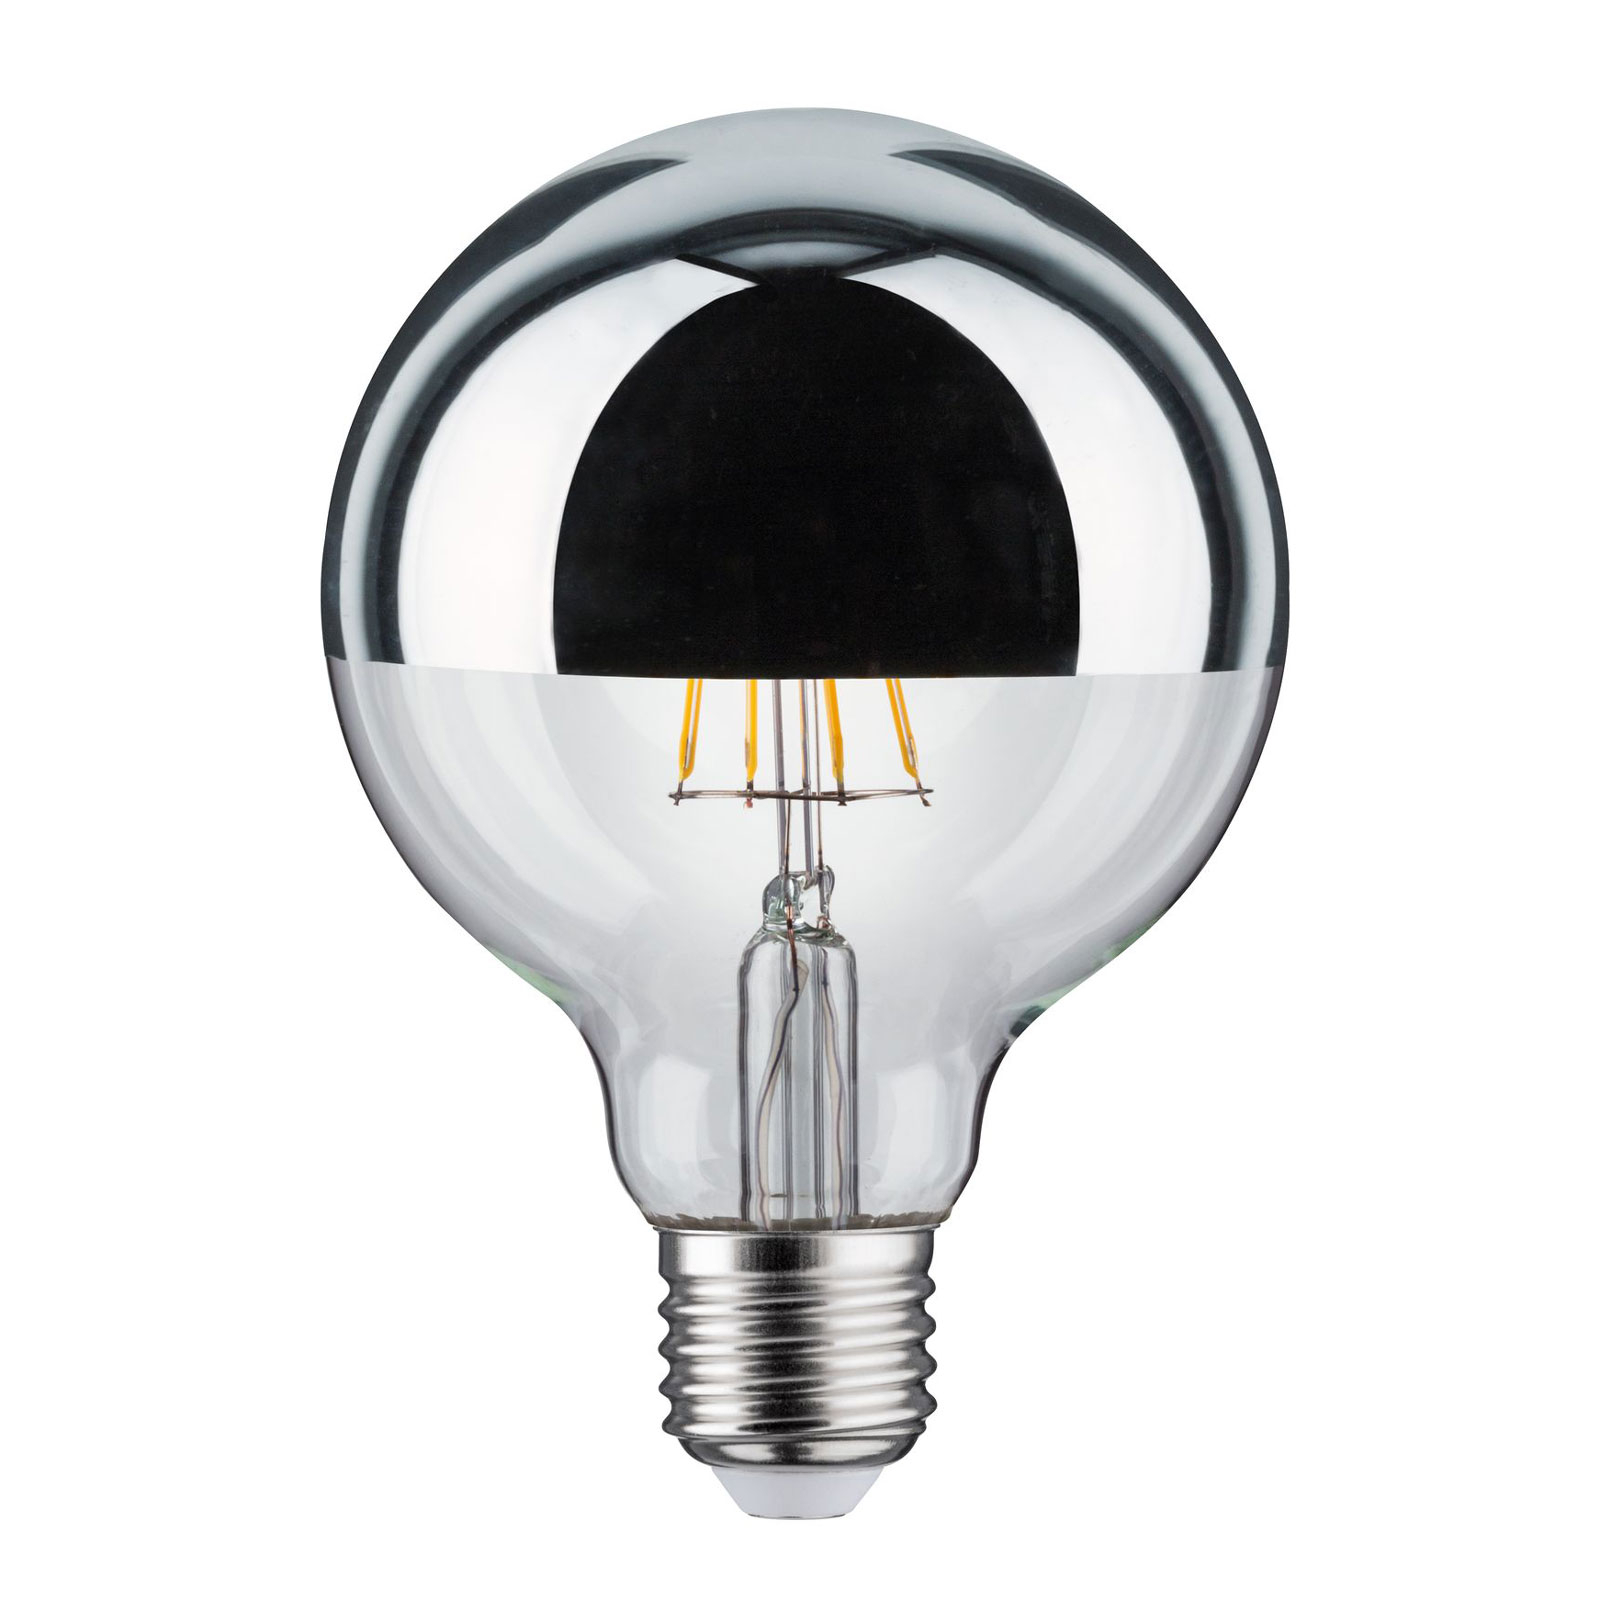 LED lamp E27 827 6.5W hoofdspiegel zilver